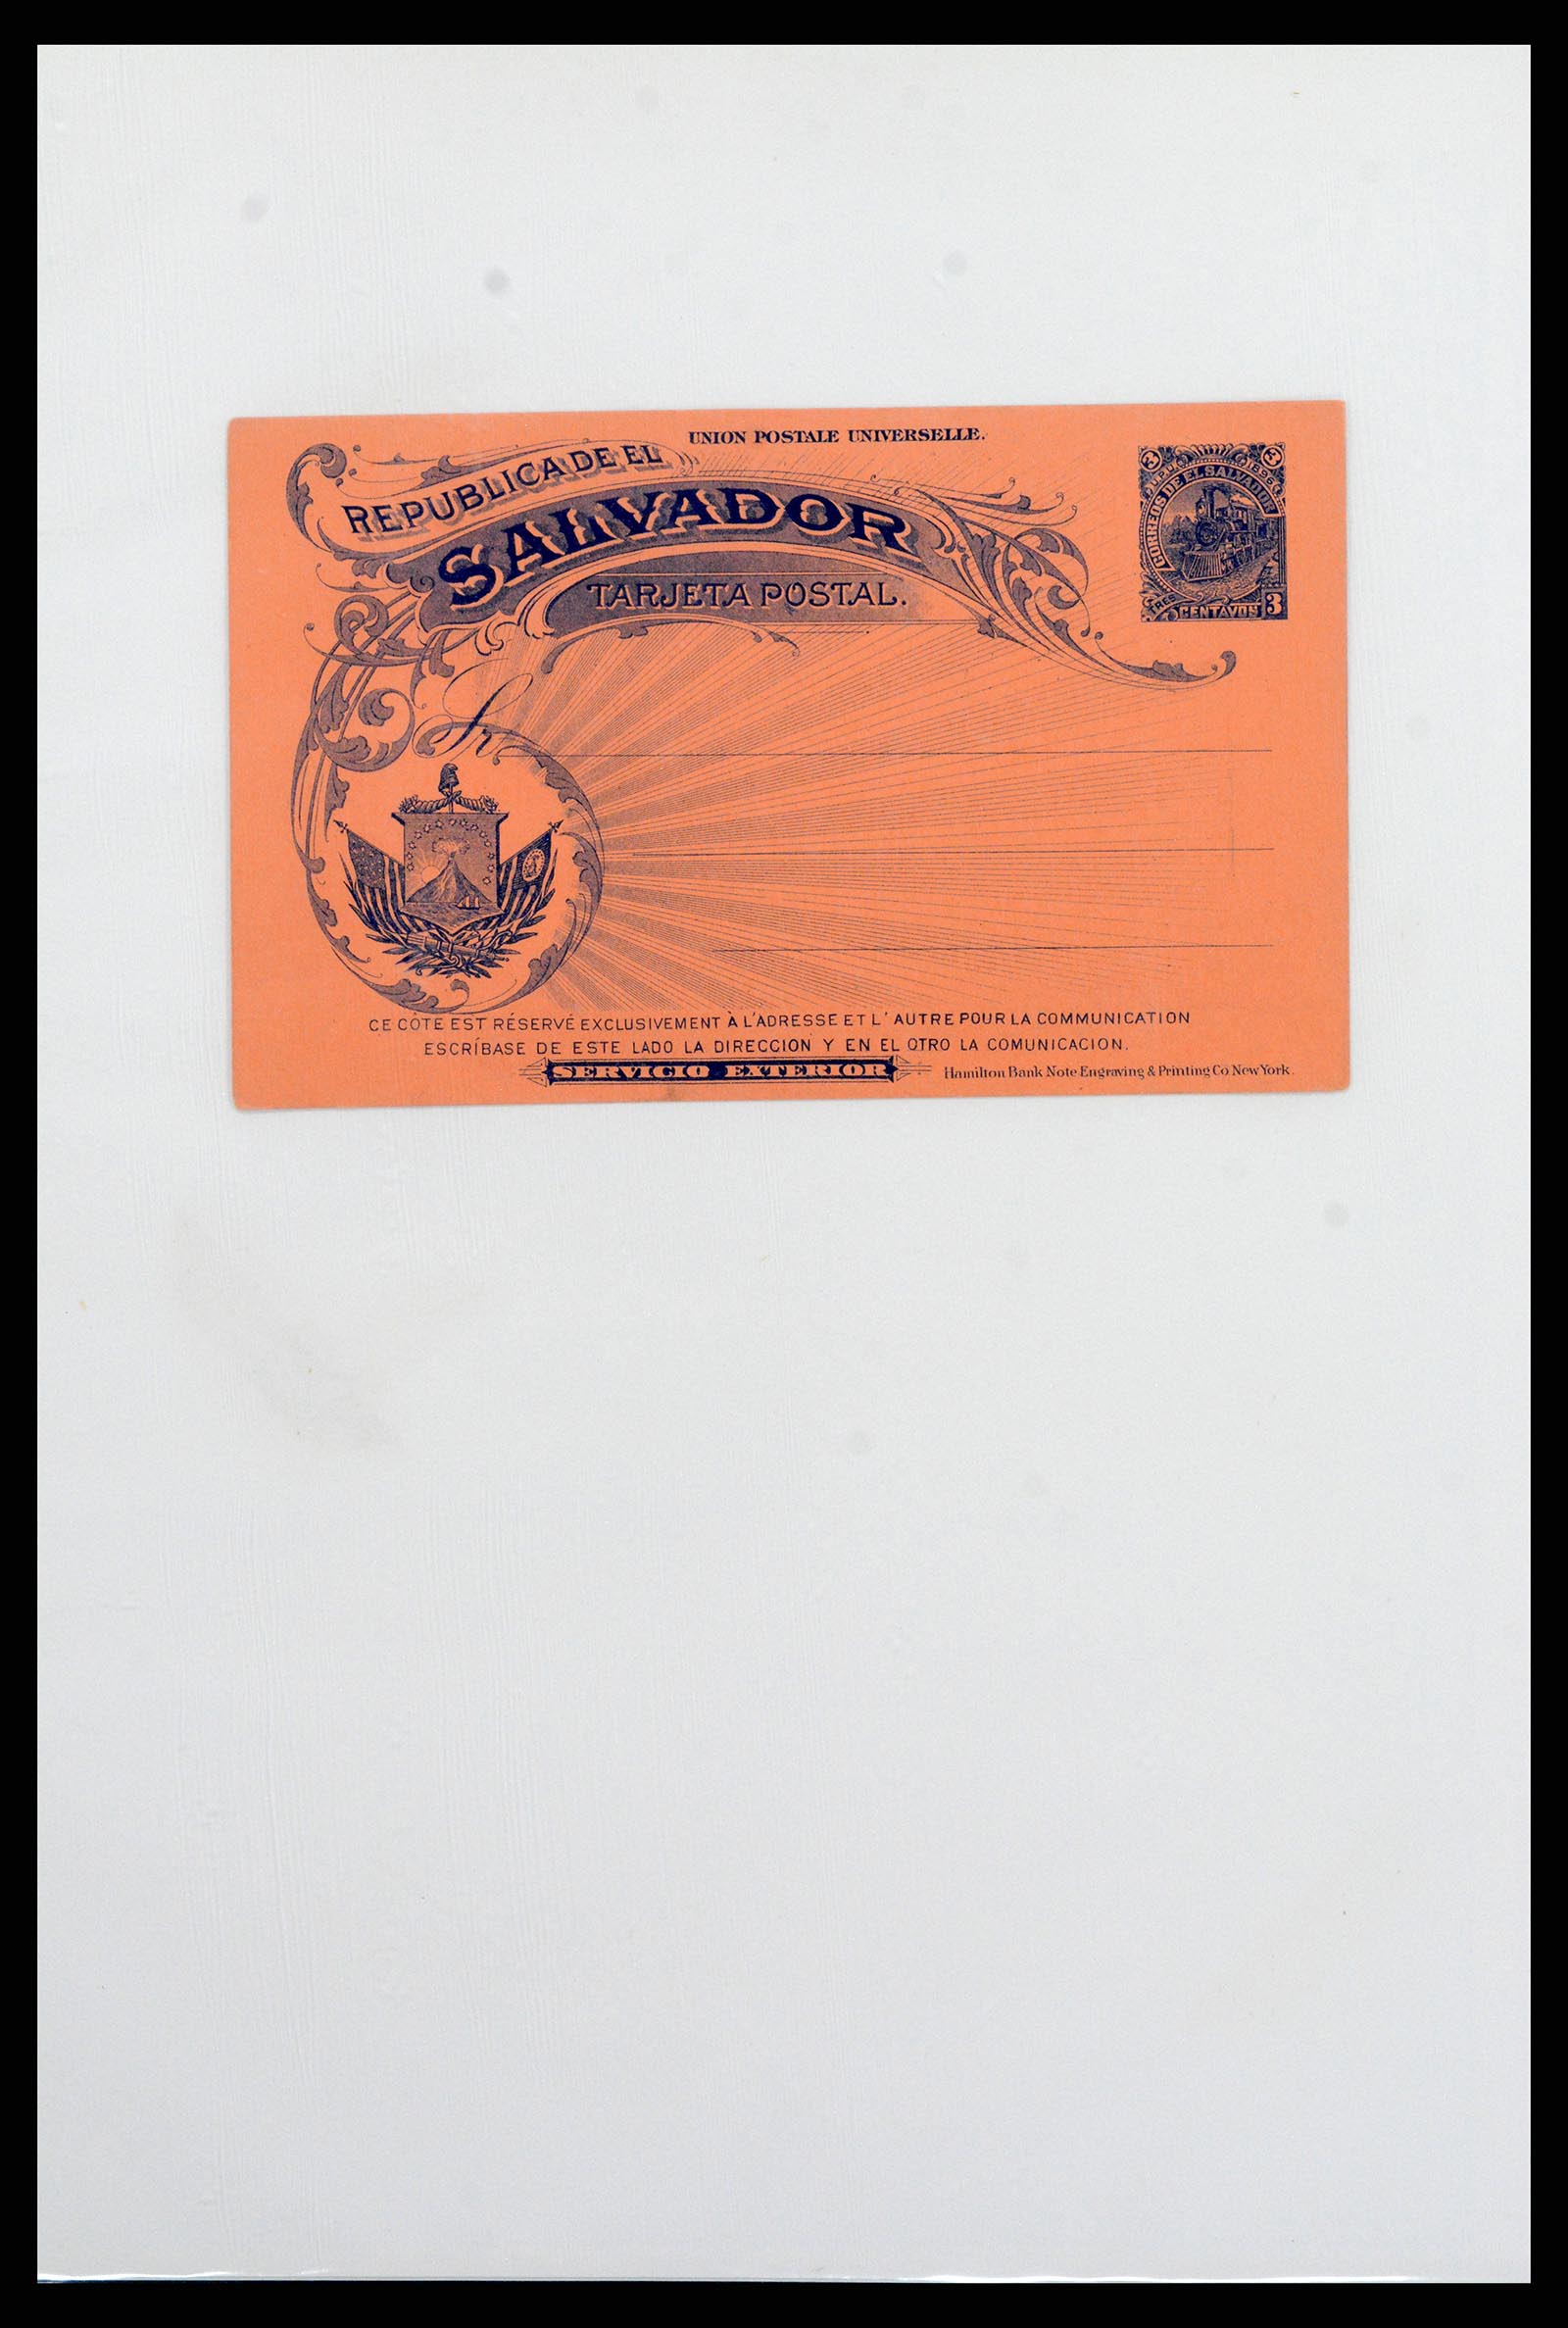 37412 023 - Stamp collection 37412 El Salvador trains 1891-1930.